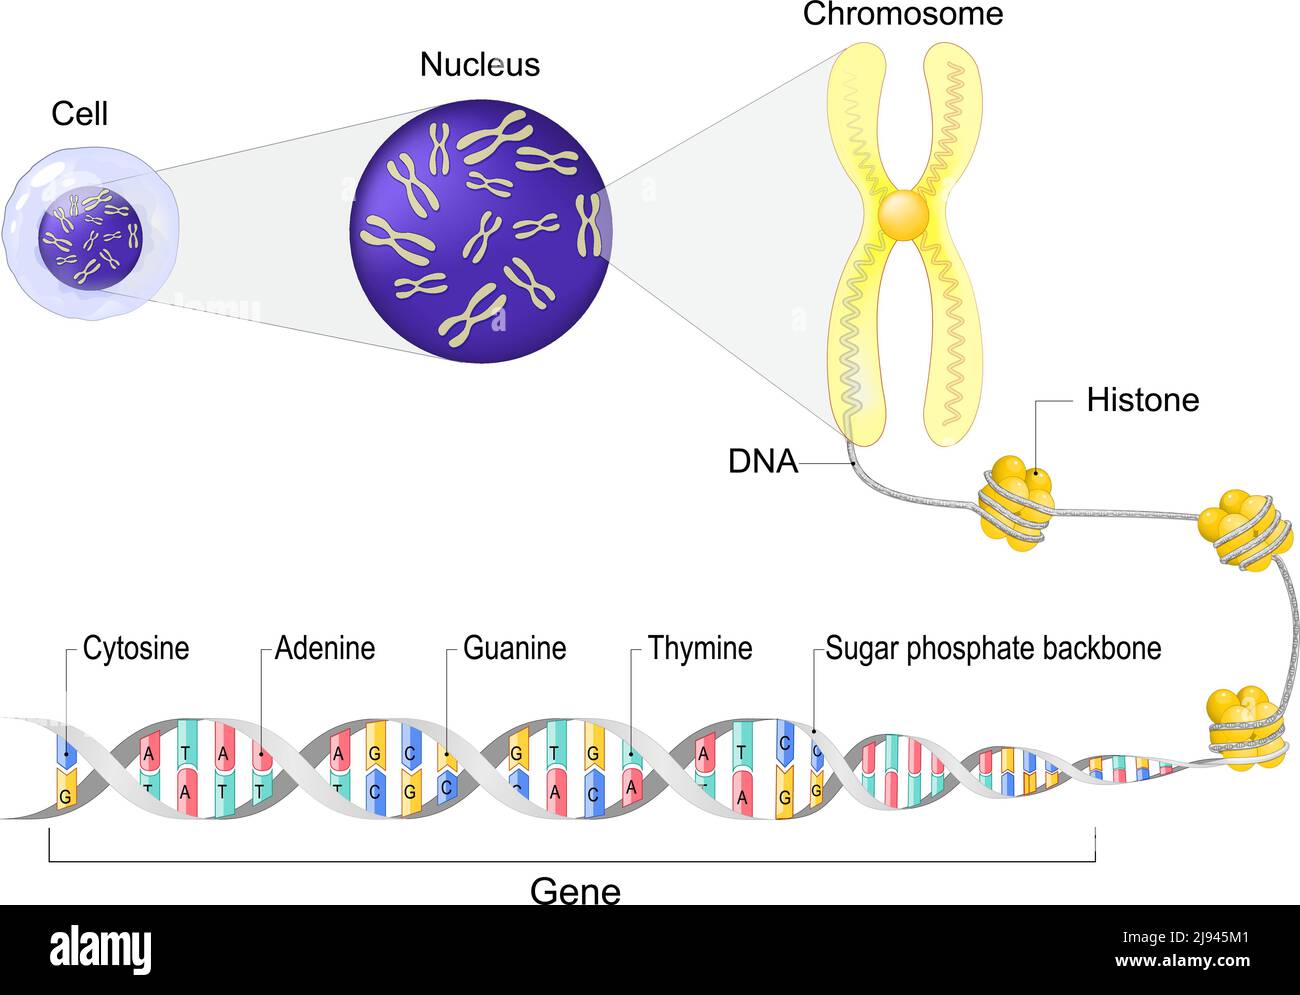 Zellanatomie. Zellkern mit Chromosomen. Nahaufnahme eines DNA-Moleküls mit Histon, Zuckerphosphat-Rückgrat, Guanin, Cytosin, Thymin, Adenin Stock Vektor